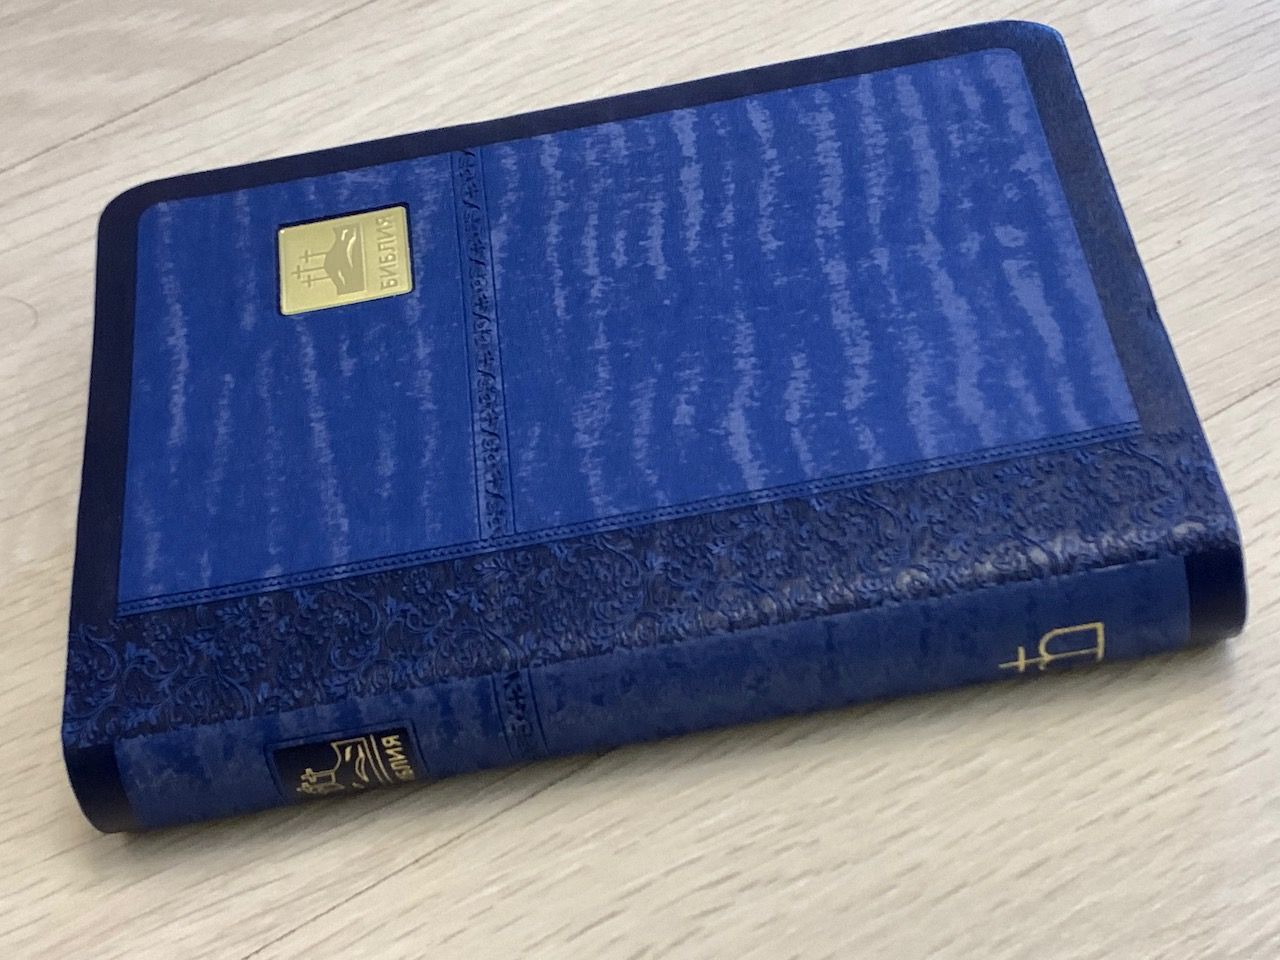 Библия 045SP переплет из искуственной кожи, цвет синий металик, формат 125*175, золотой обрез, кремовые страницы, код 1375